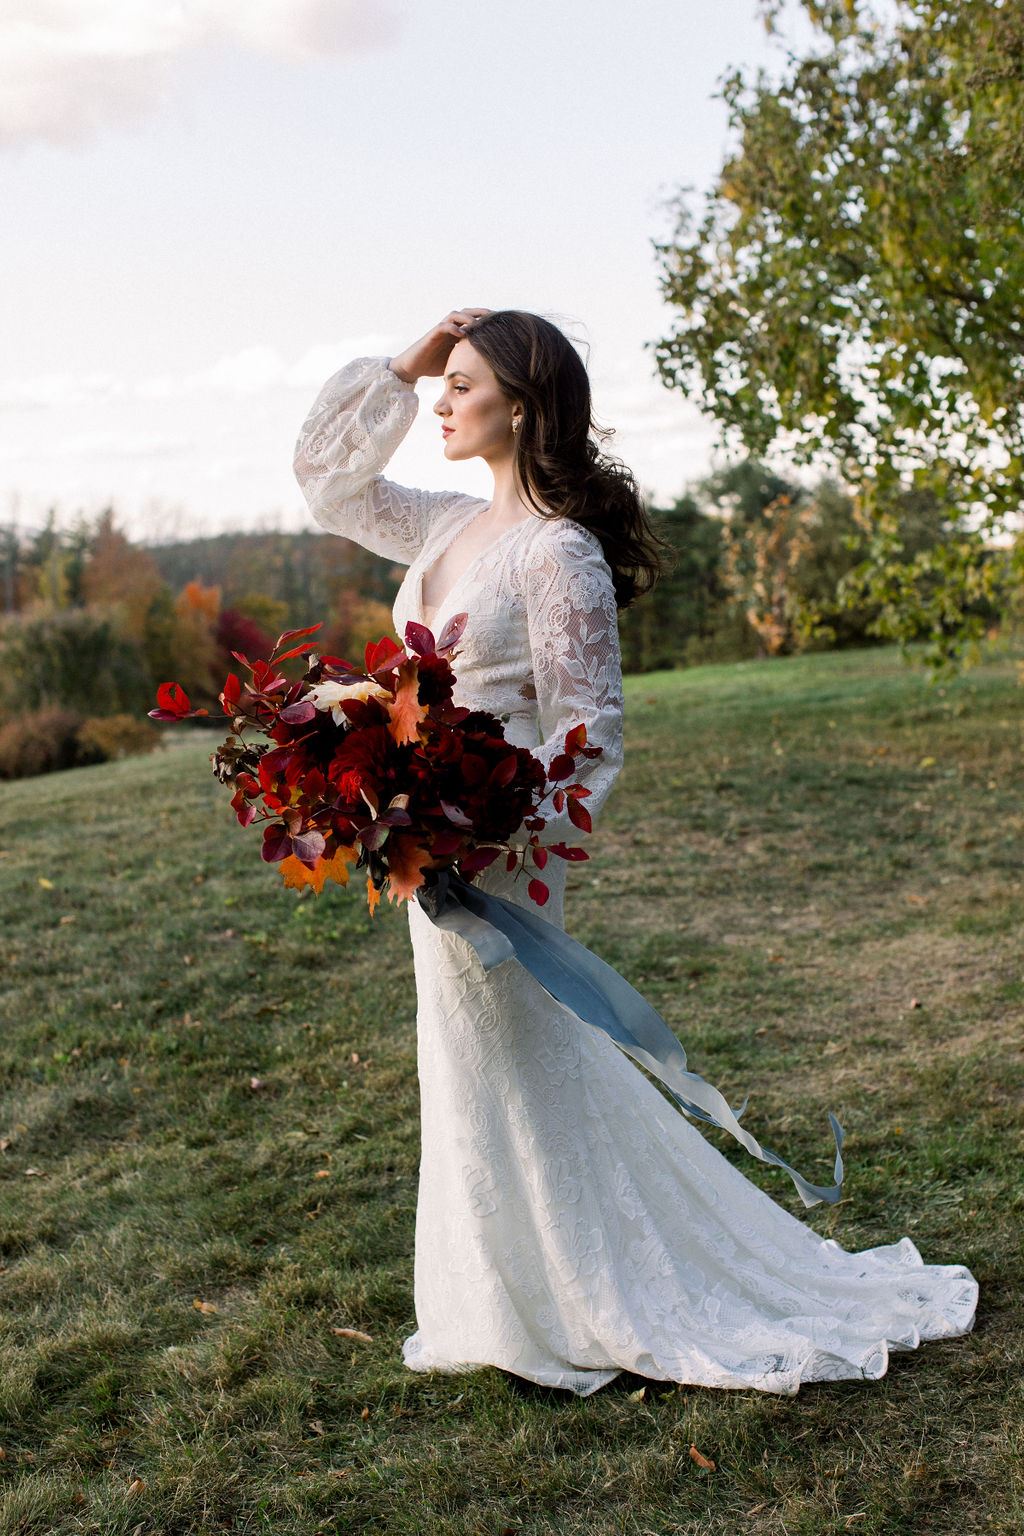 Bride wearing vintage-inspired long sleeve wedding dress